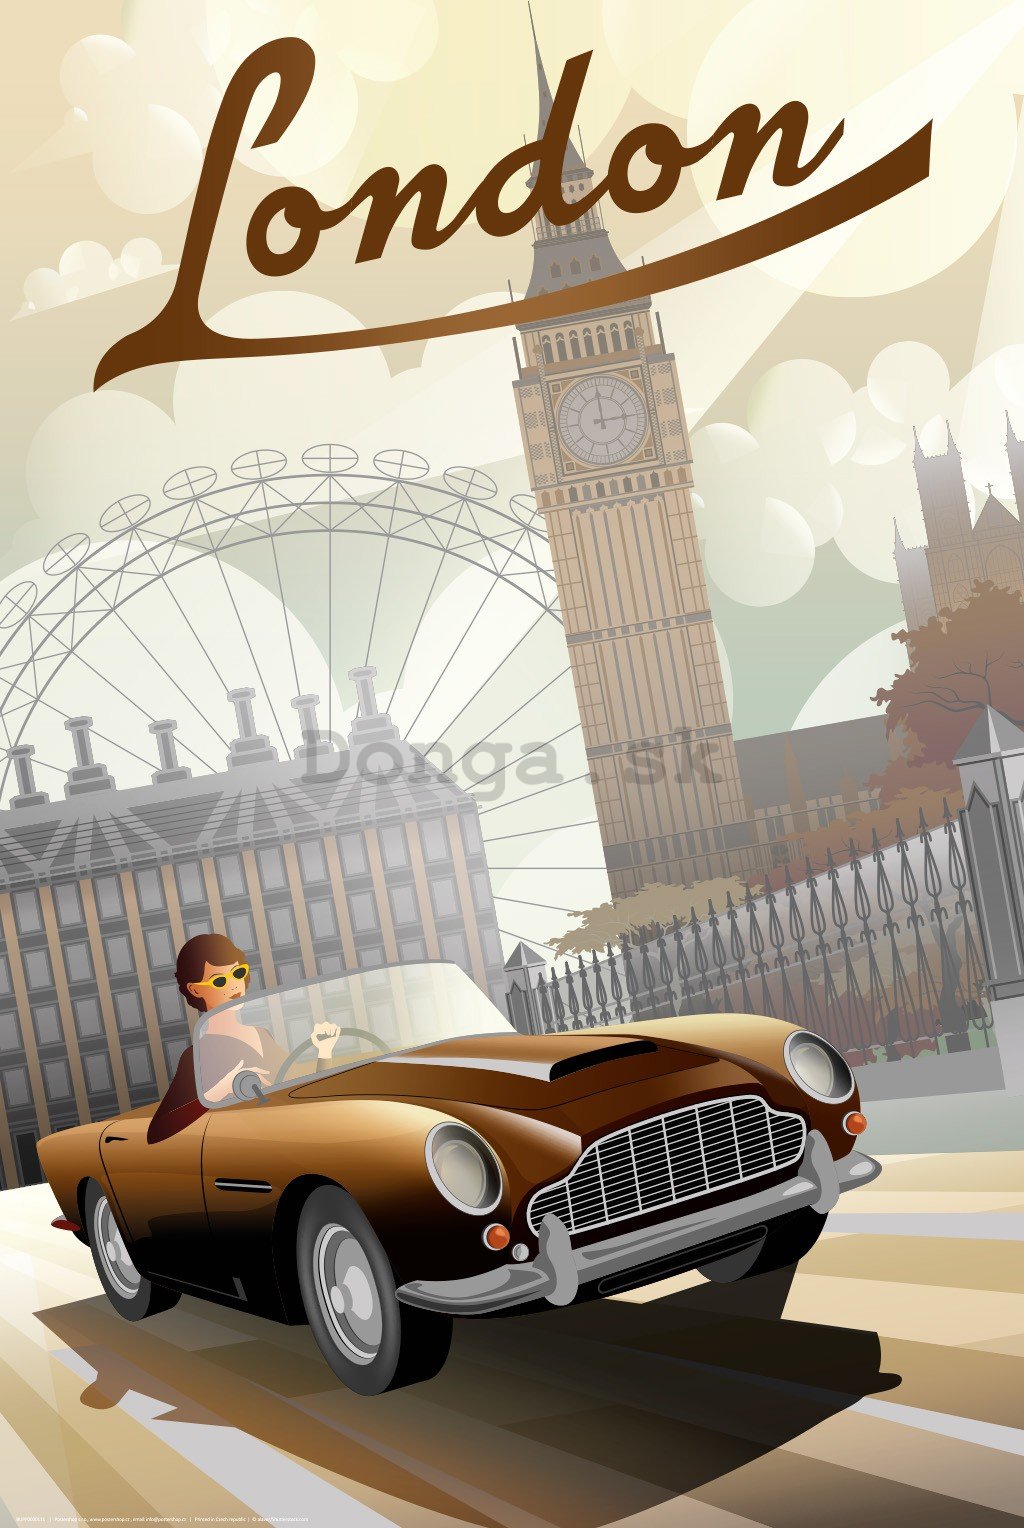 Plagát: London (Art Deco)